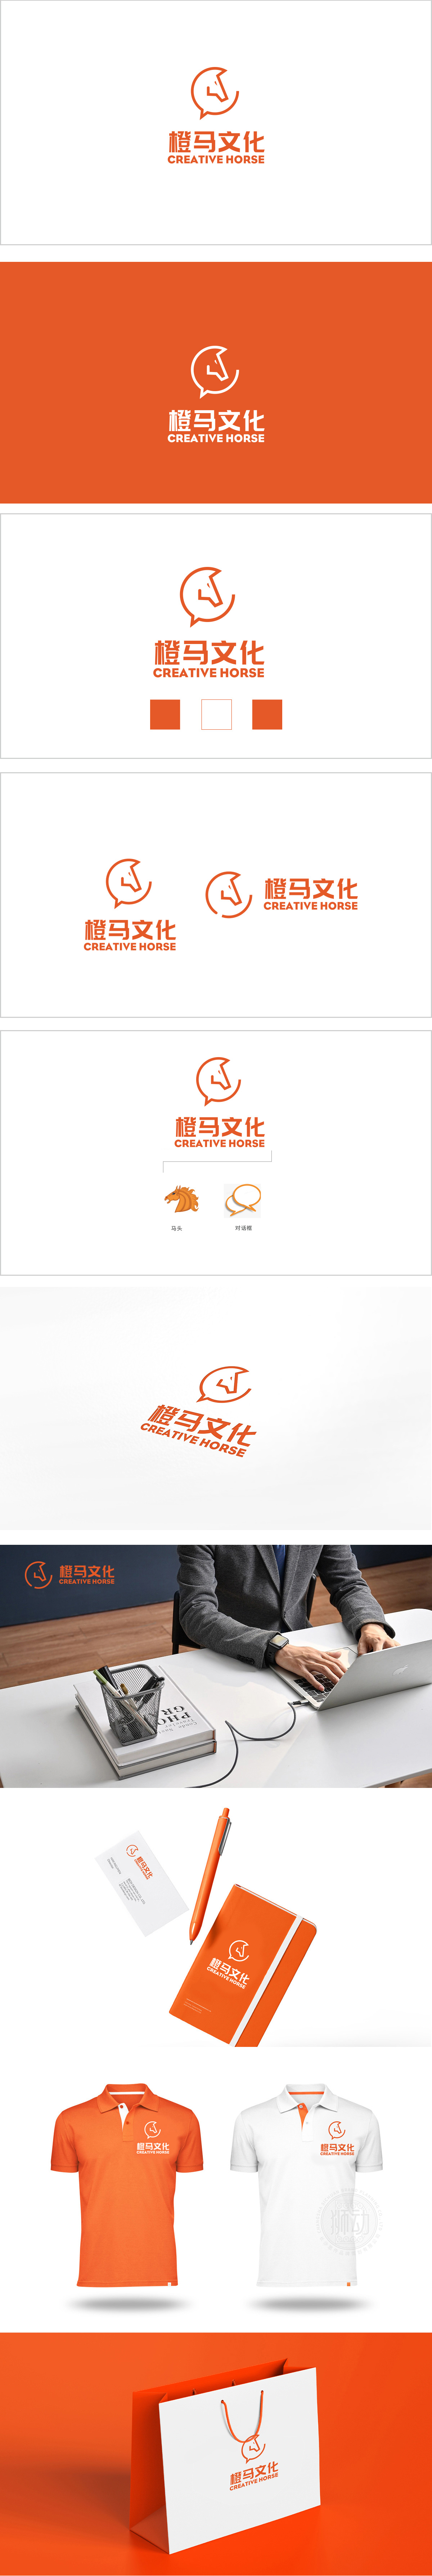 橙马广告设计LOGO设计